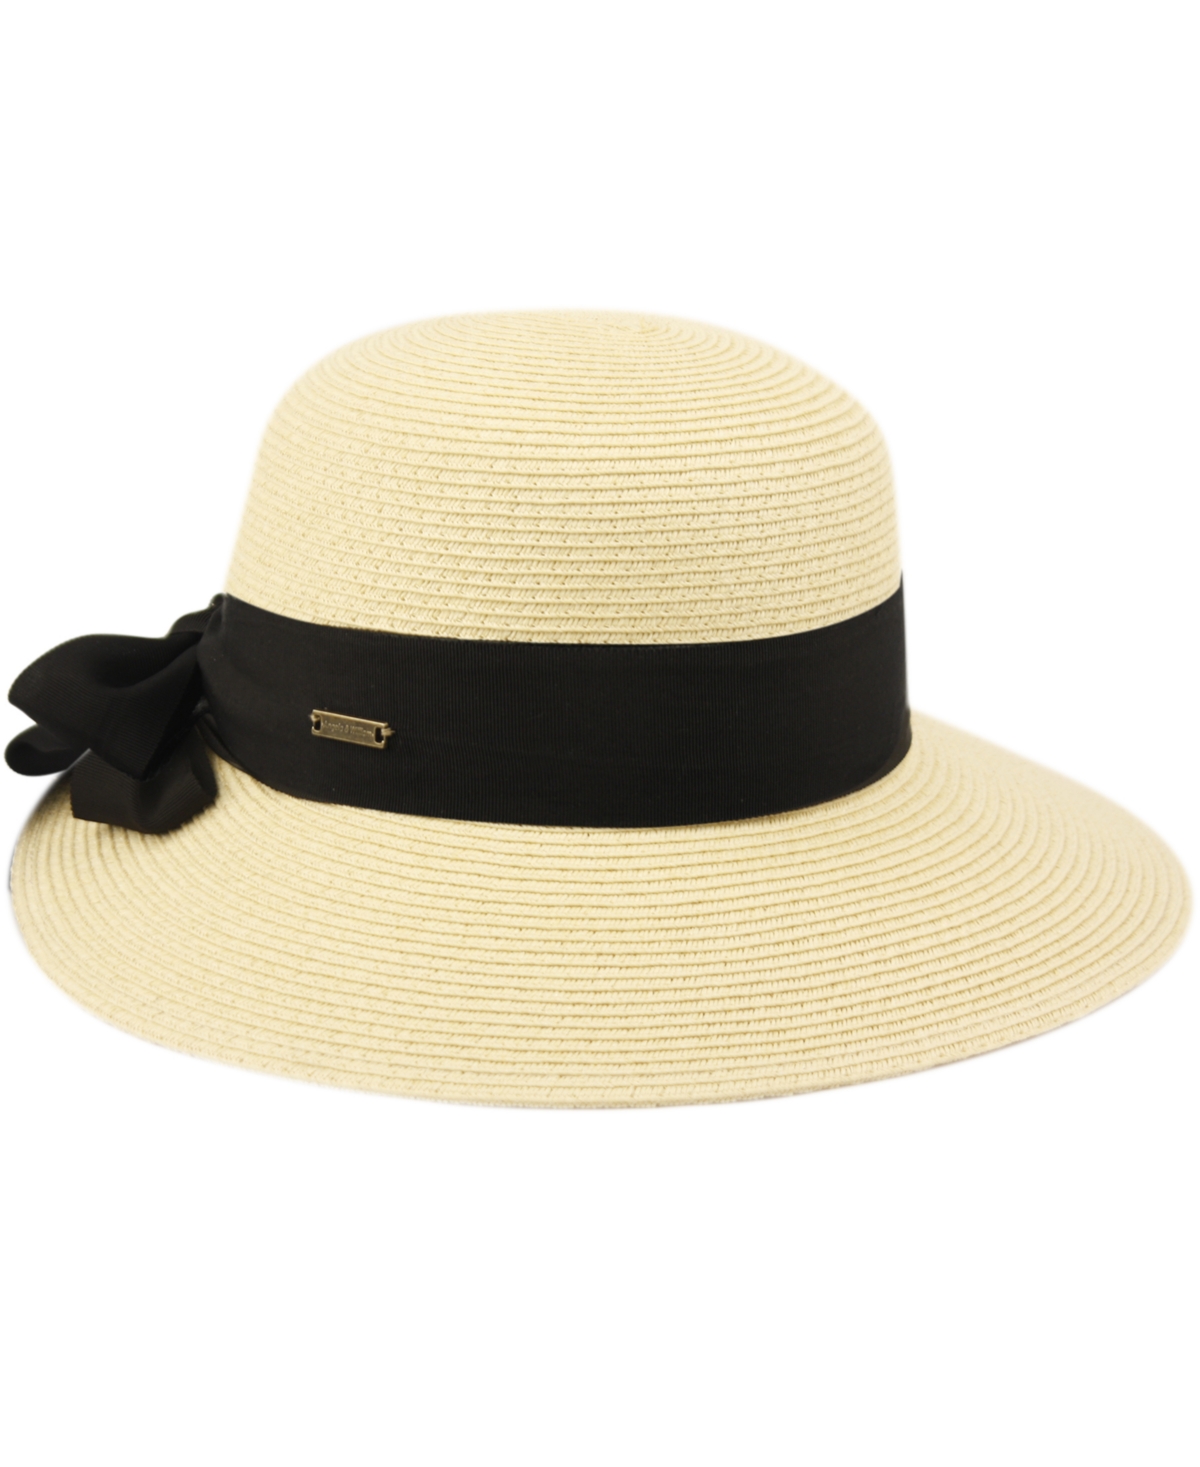 Shop Angela & William Women's Brimmed Beach Sun Straw Hat In Light Brown